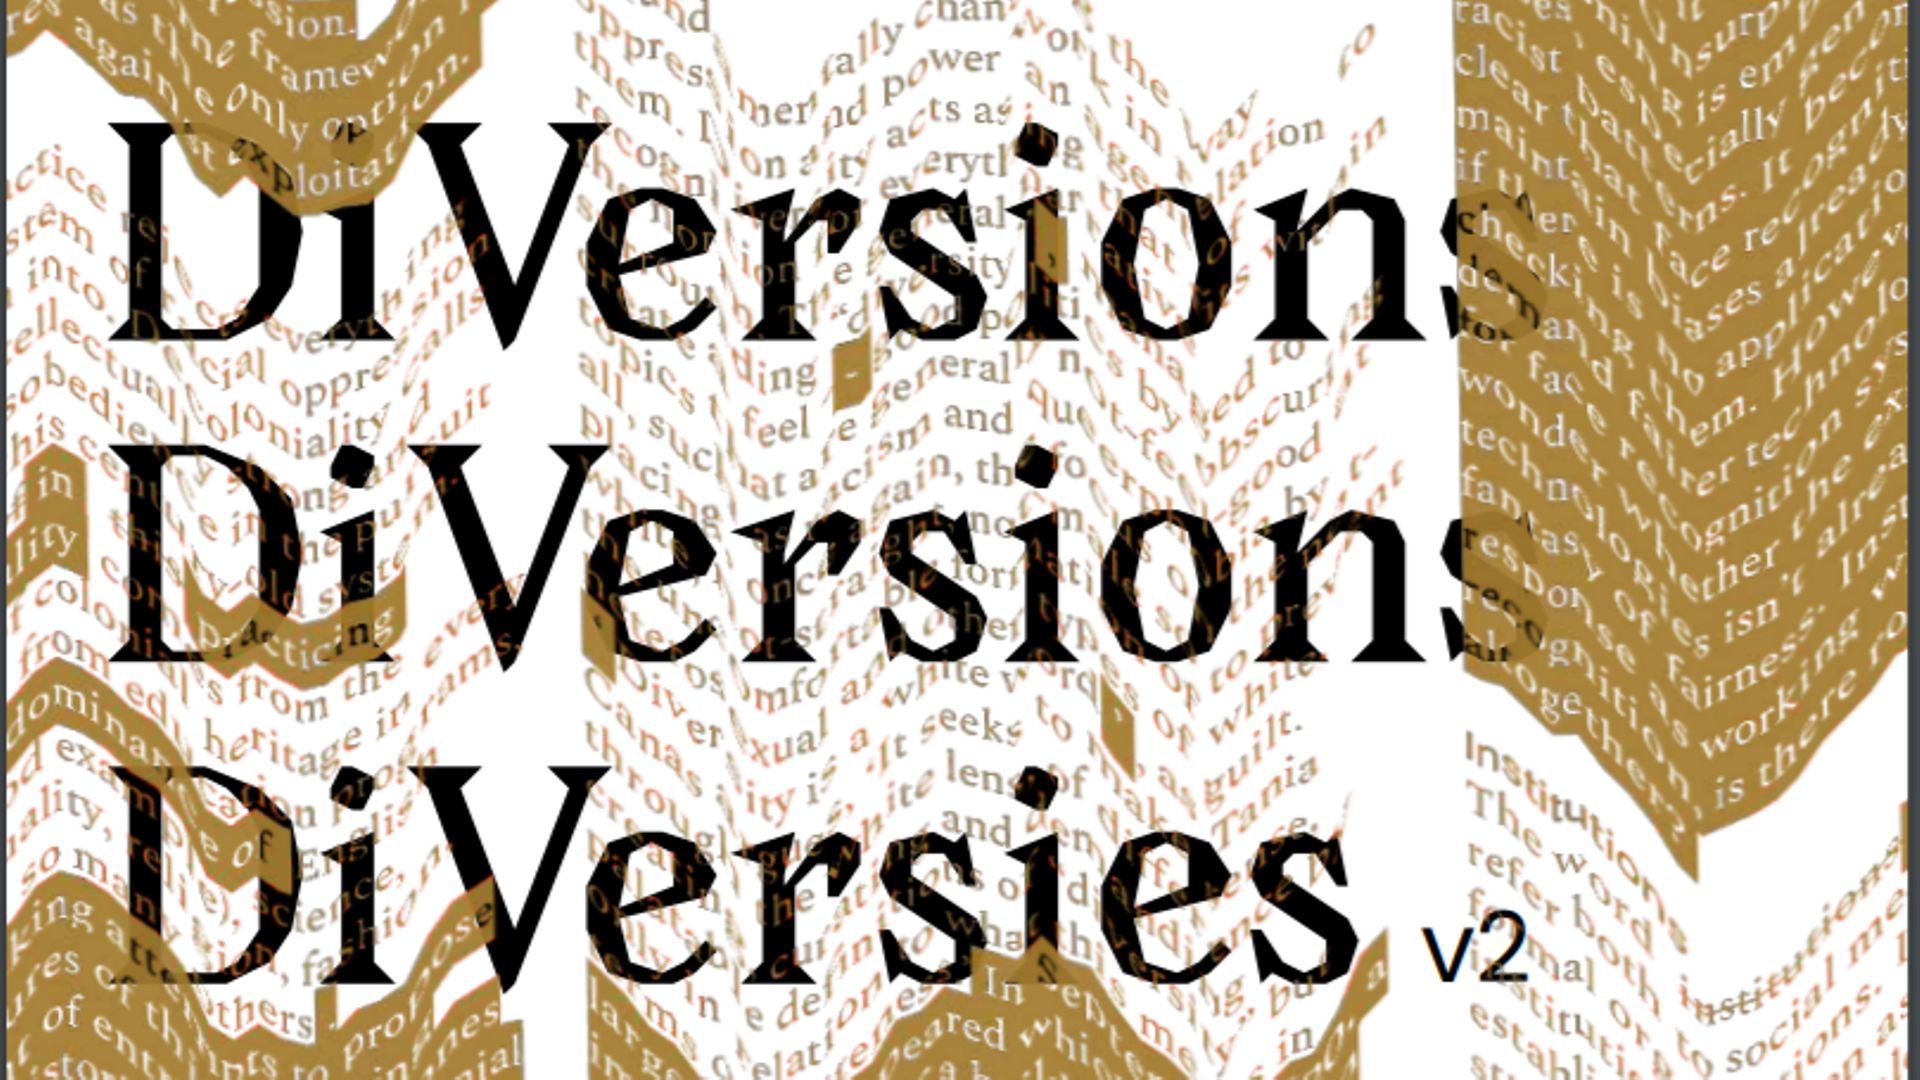 DiVersions V2 est une collection de publications numériques, construite sur le principe de la multiplication des voix.